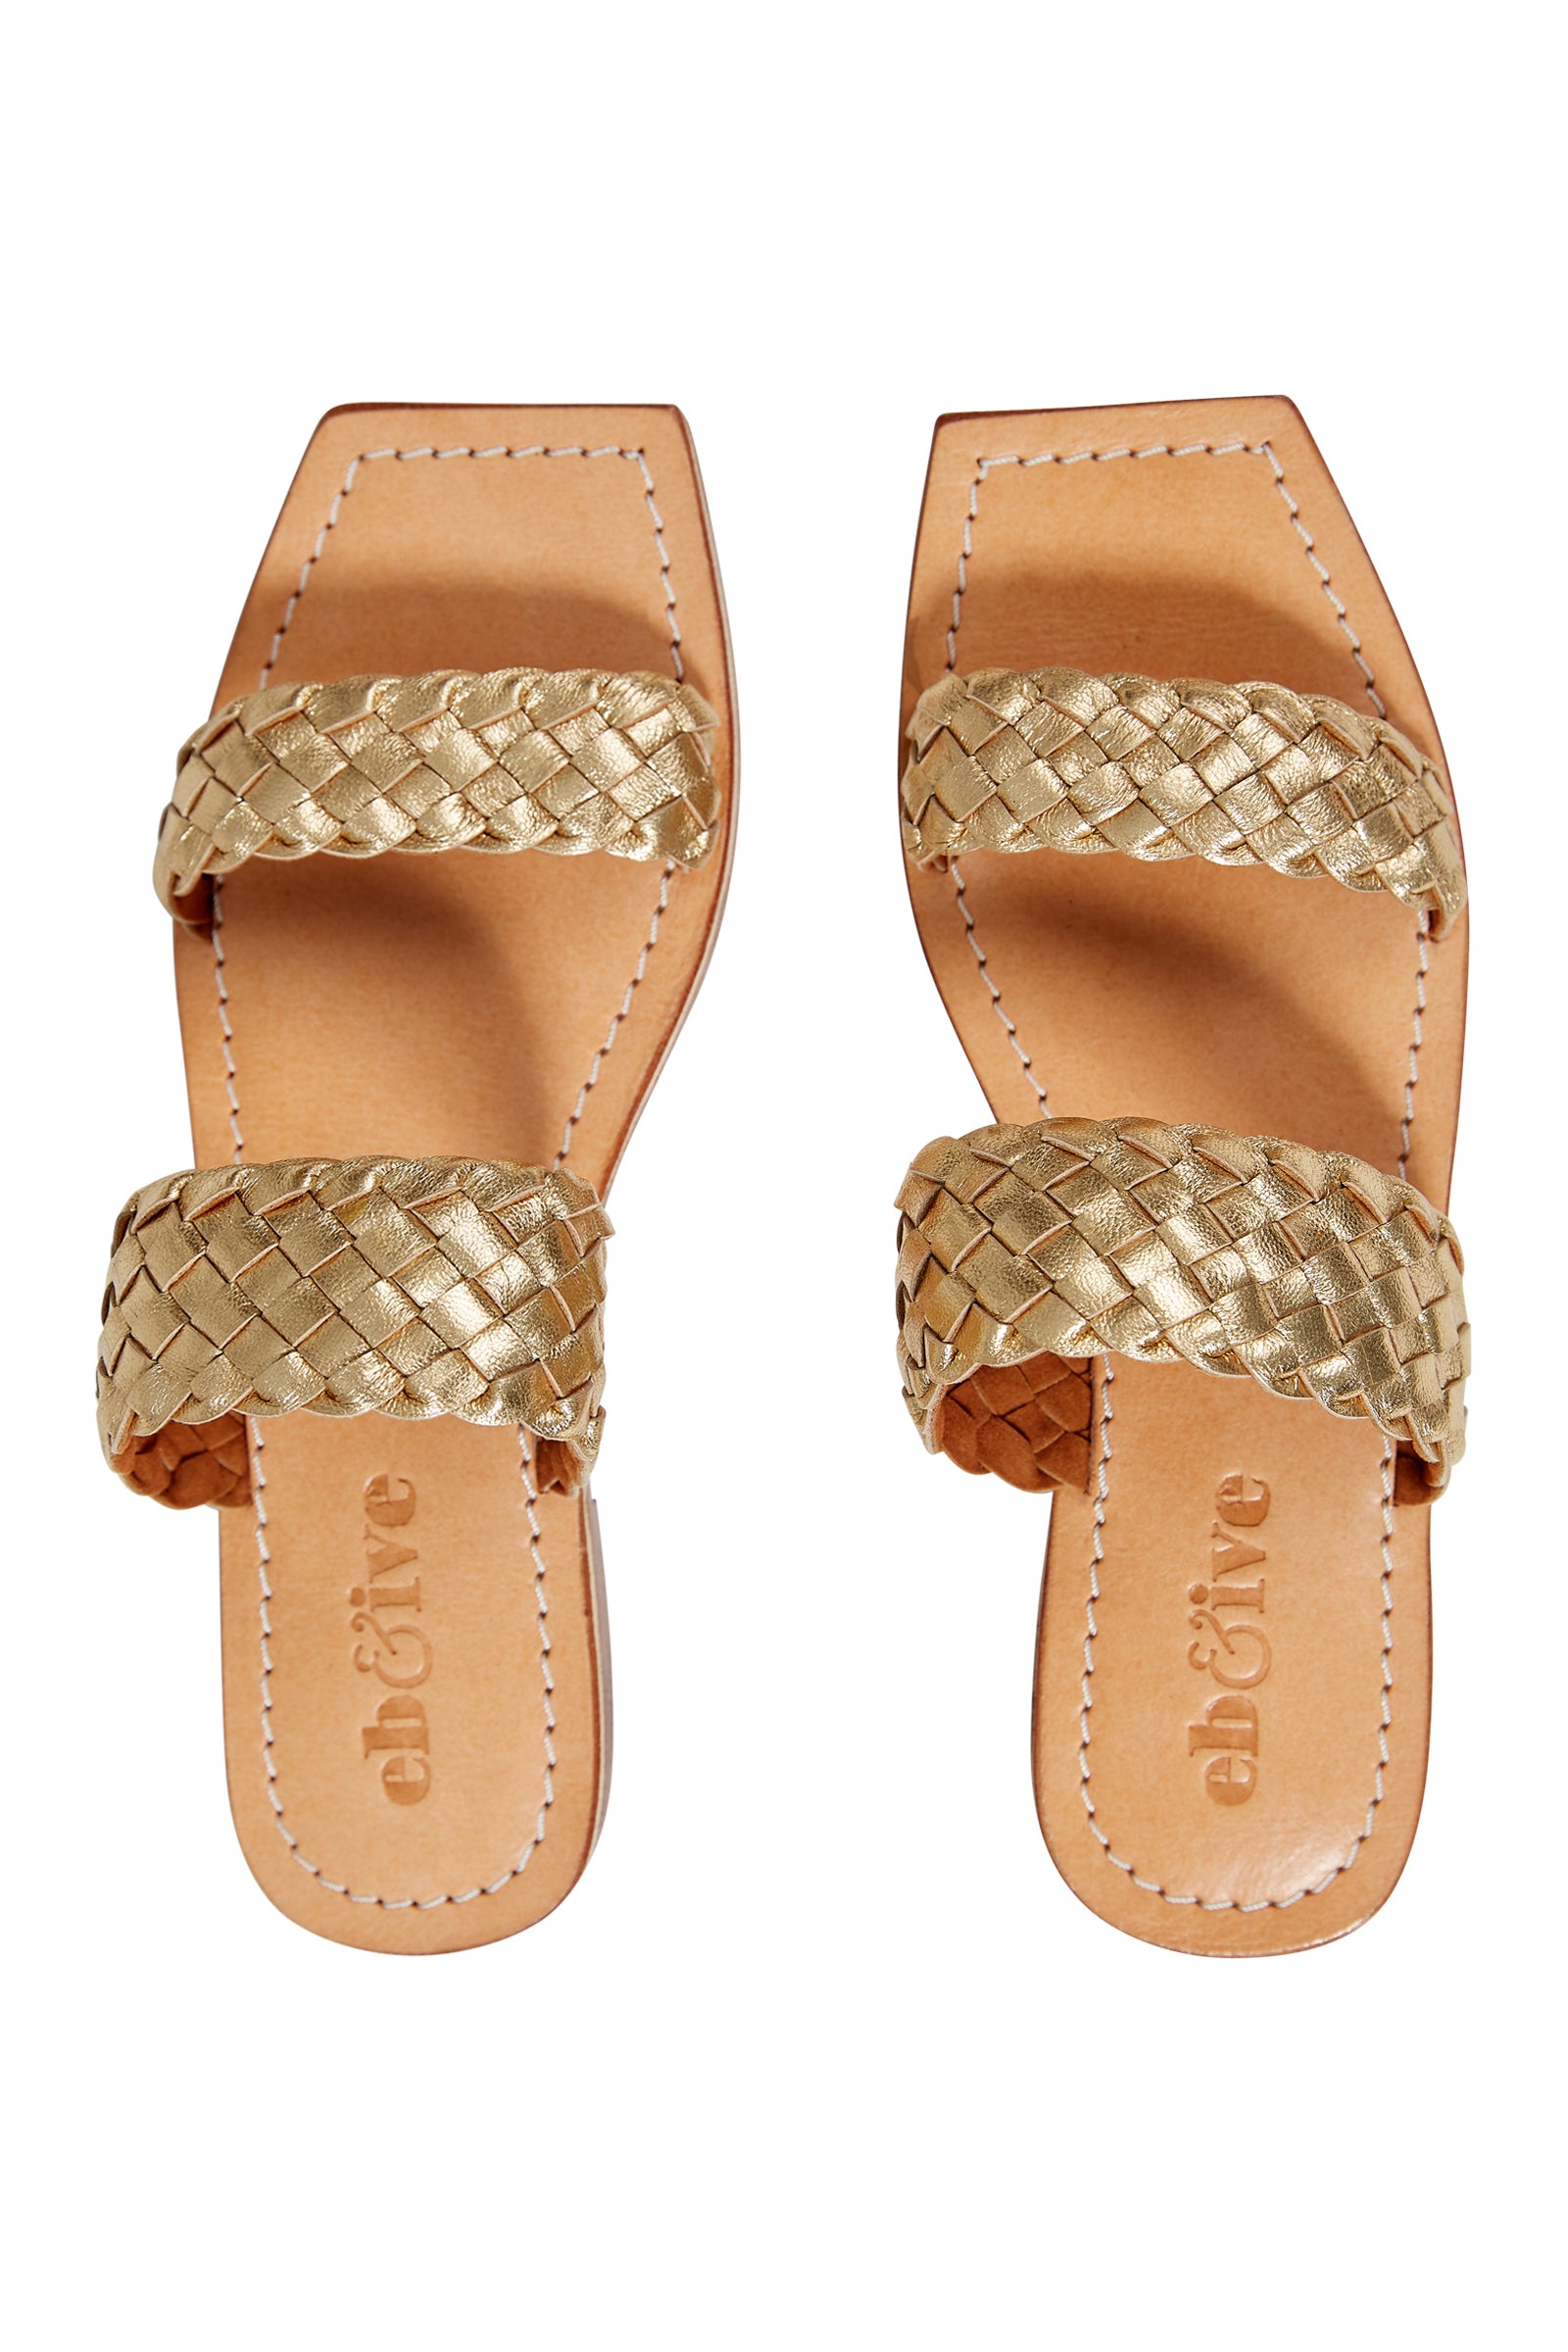 La Vie Sandal - Gold - eb&ive Footwear - Sandals